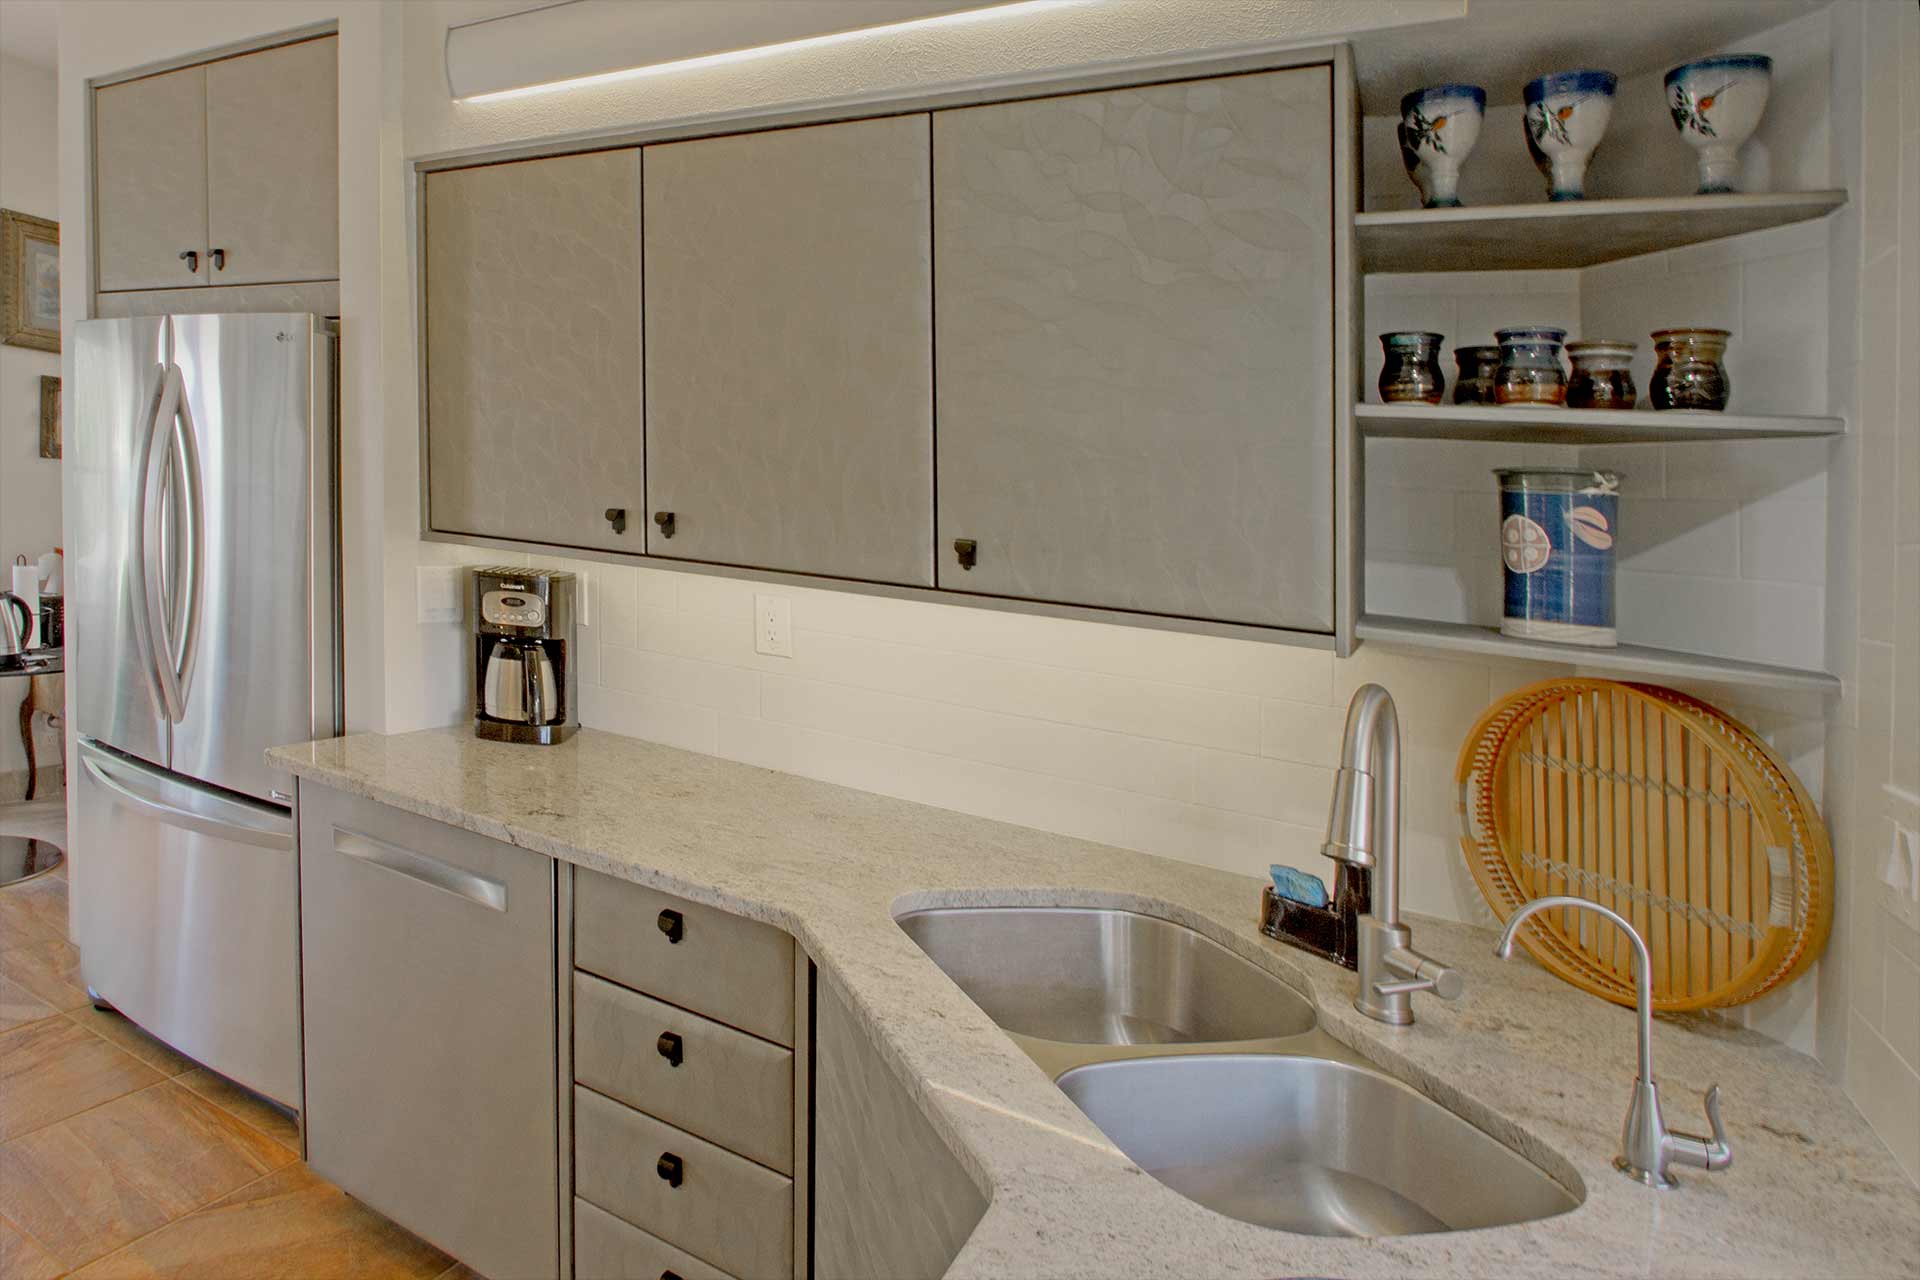 Alvernas kitchen sink and cabinets